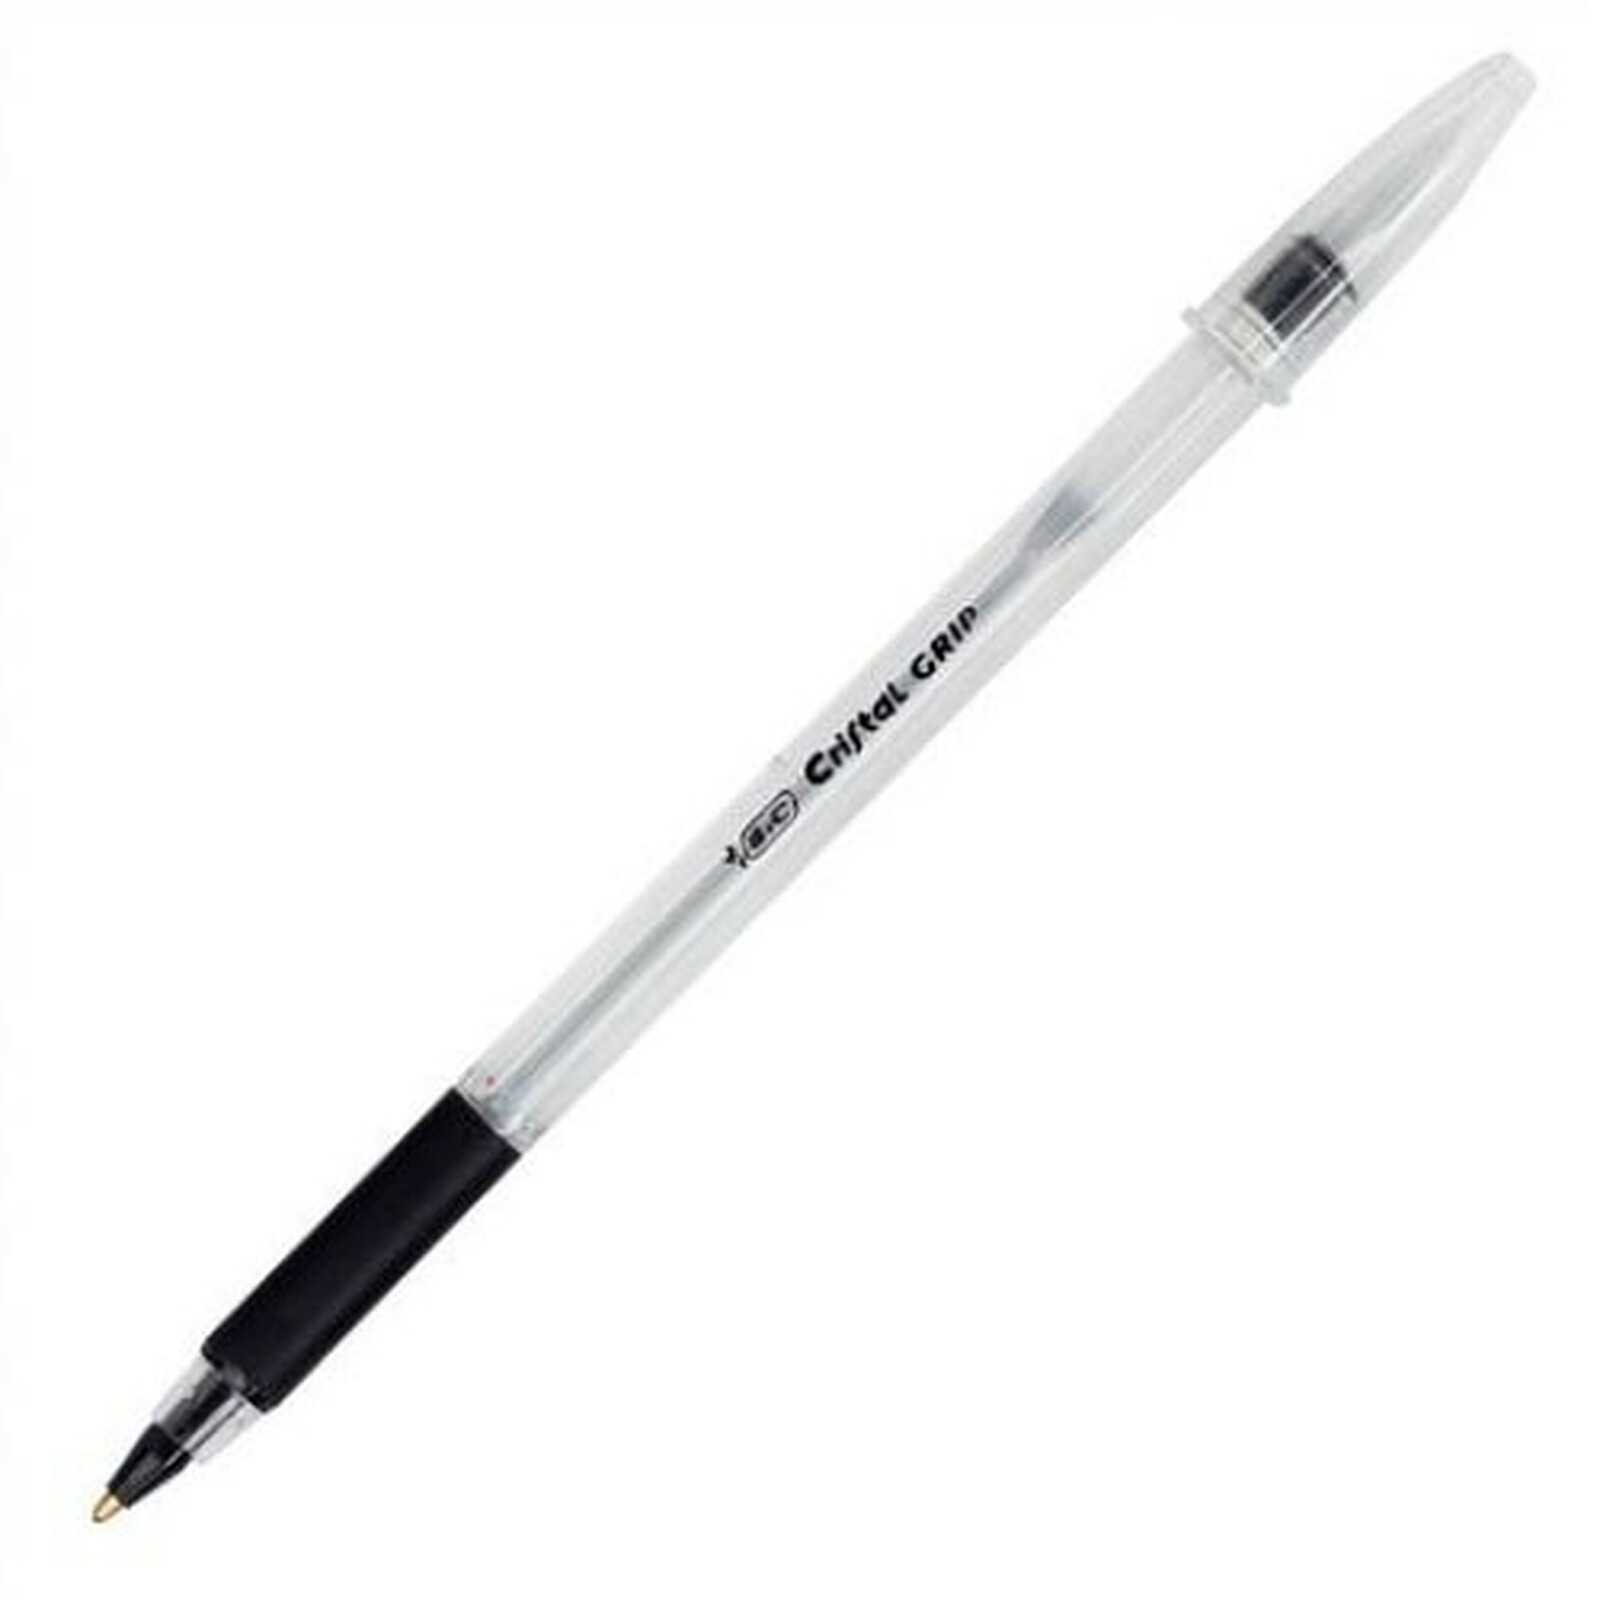 BIC Cristal Large stylo bille noir au meilleur prix sur